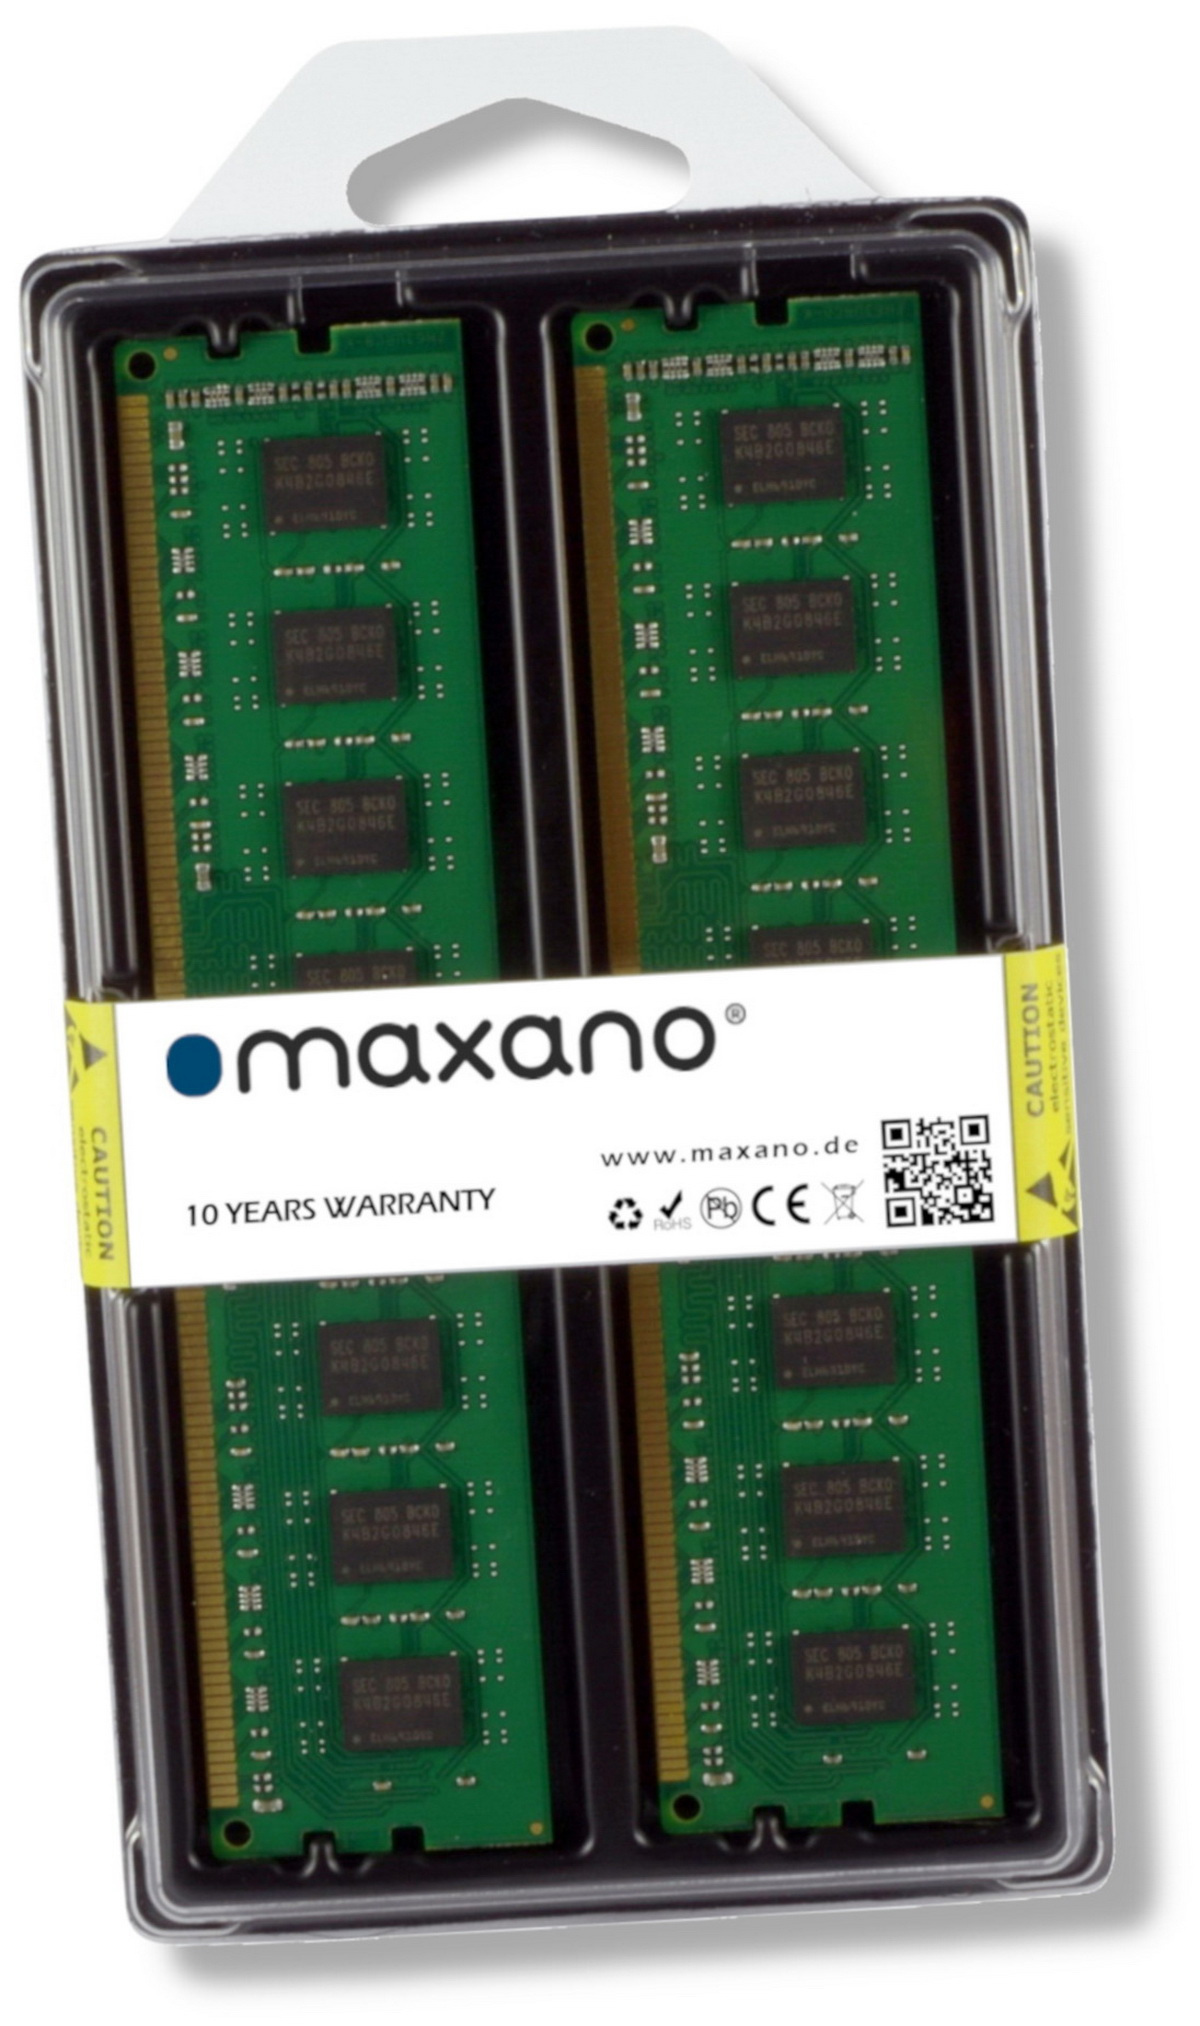 DDR4 (2x128GB) 256 QNAP GB 256GB Kit TS für MAXANO TS-h1290FX-7232P Arbeitsspeicher RAM LRDIMM 3200MHz